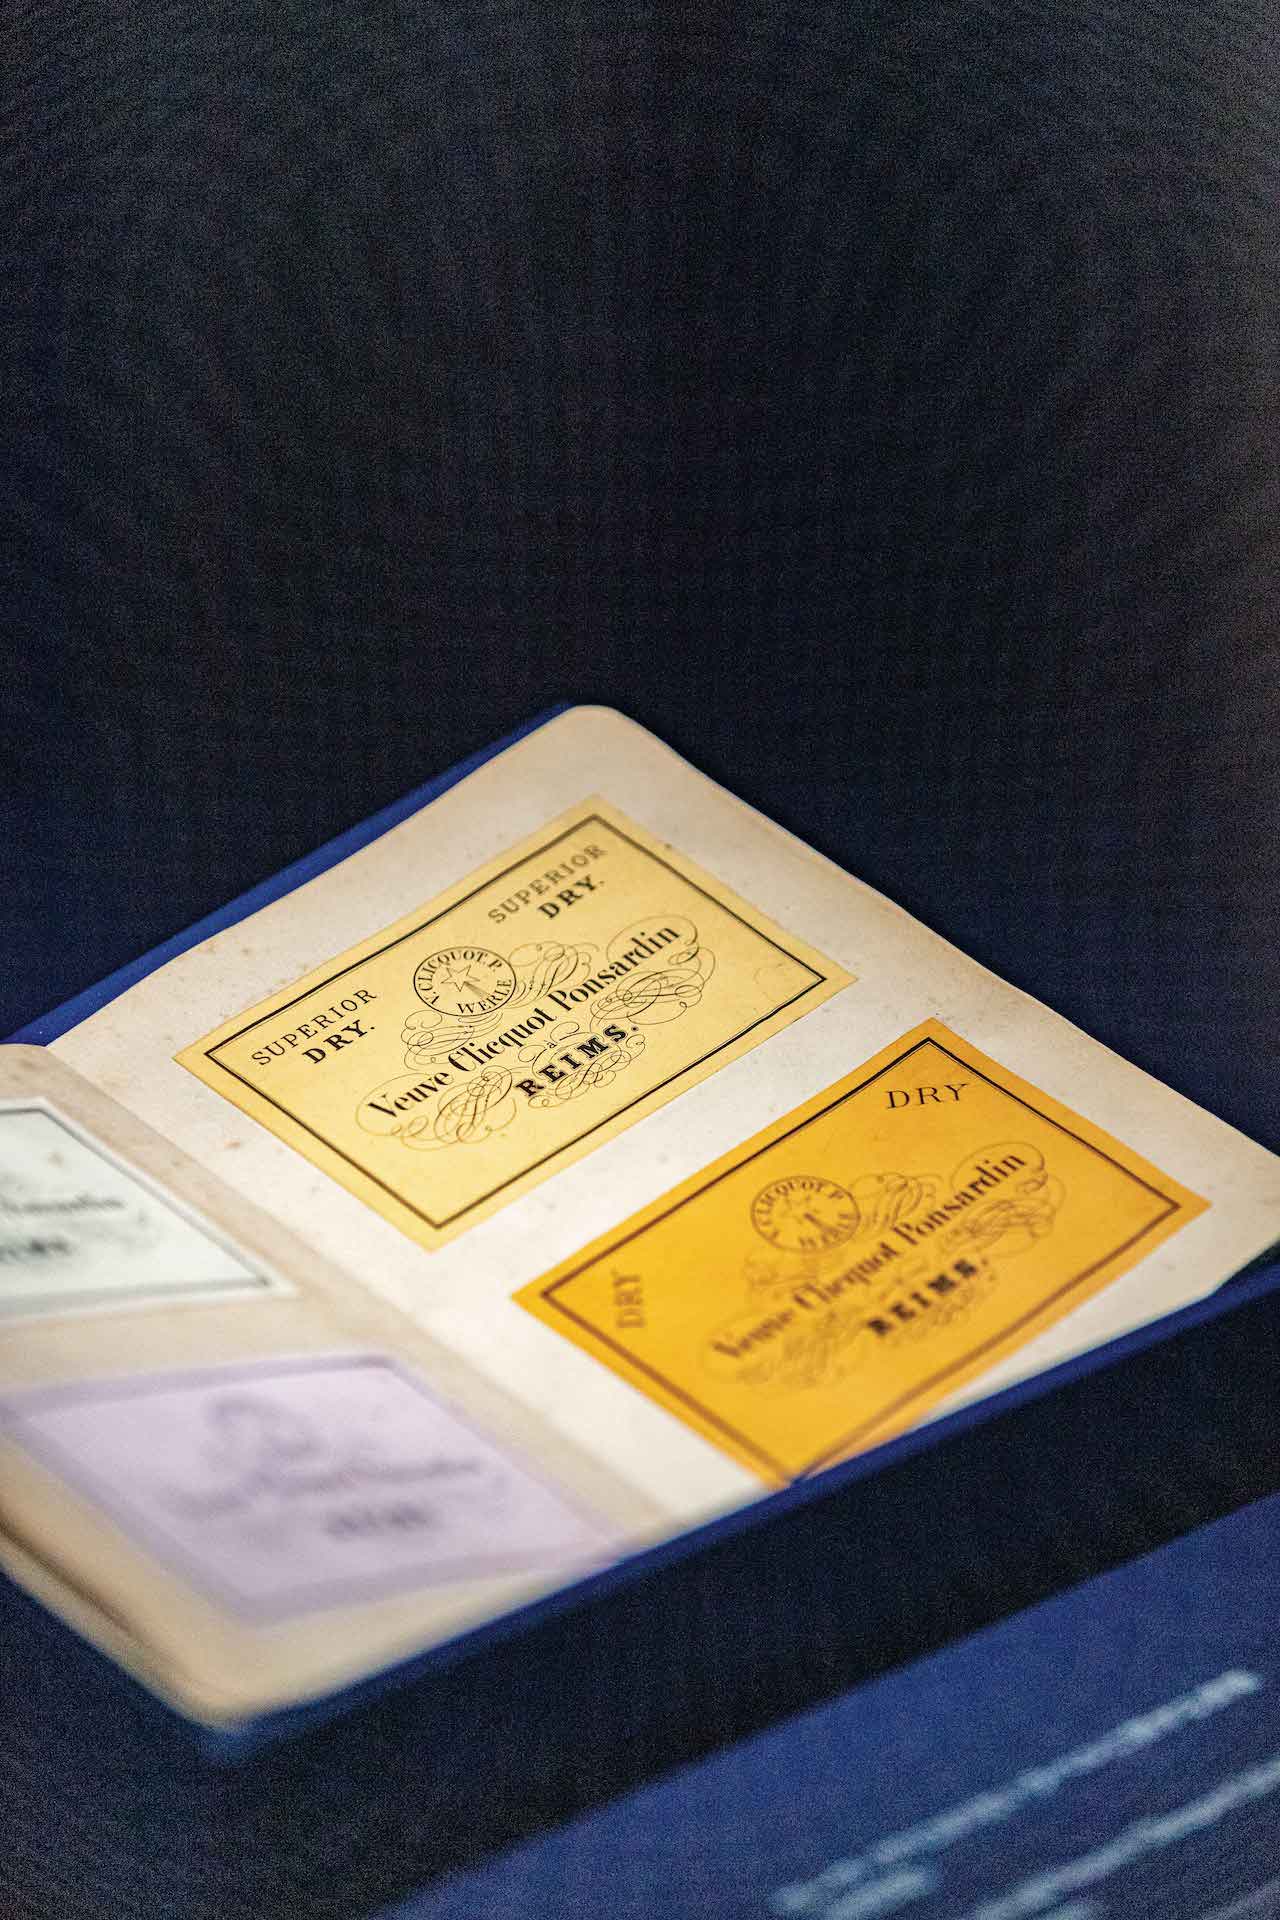 Veuve Clicquot Brings 'Solaire Culture' Exhibit to L.A. – WWD